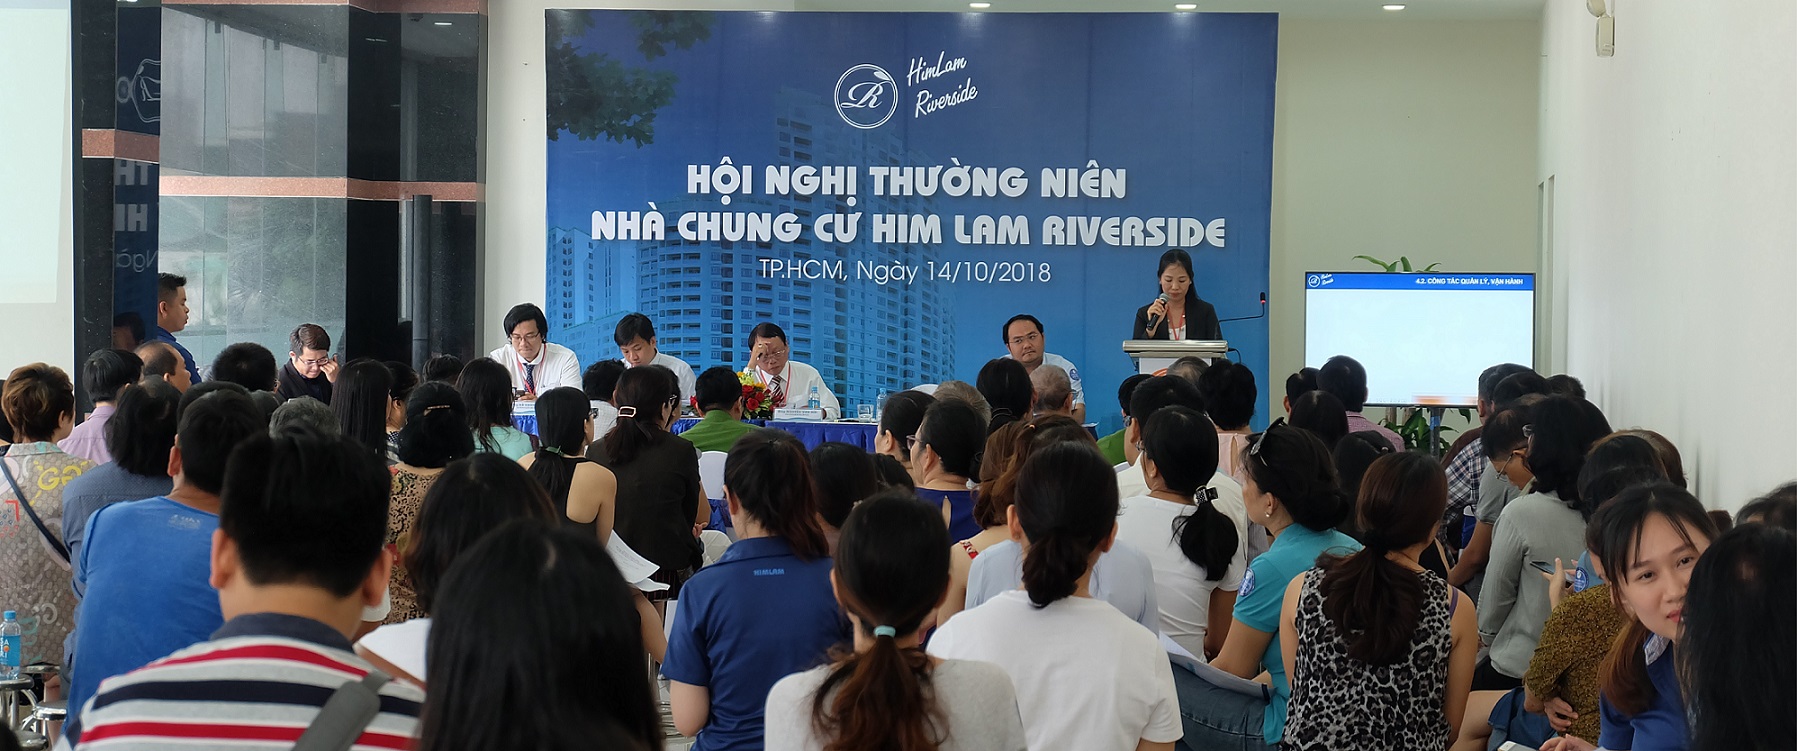 Hội nghị Nhà chung cư Him Lam Riverside năm 2018